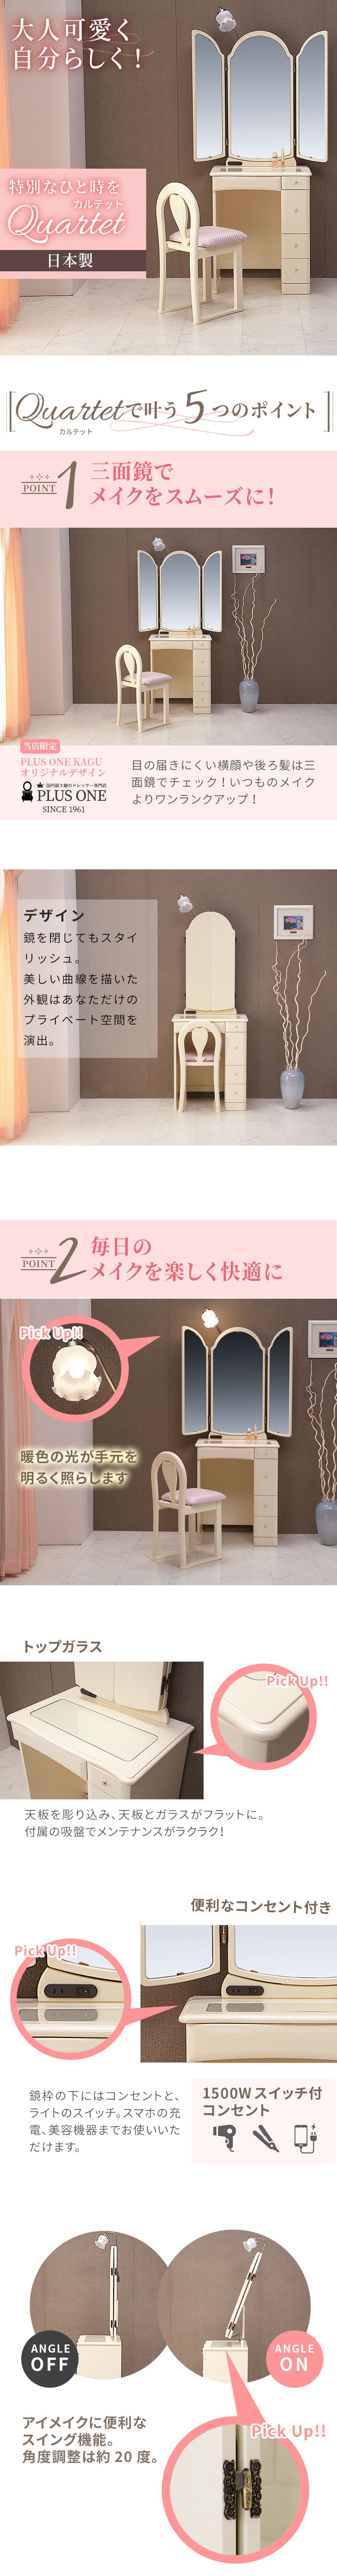 【楽天市場】ドレッサー 三面鏡 白 コンパクト デスク ライト付き 3面鏡 鏡 姫系 かわいい 可愛い ホワイト 日本製 完成品 鏡台 ランプ